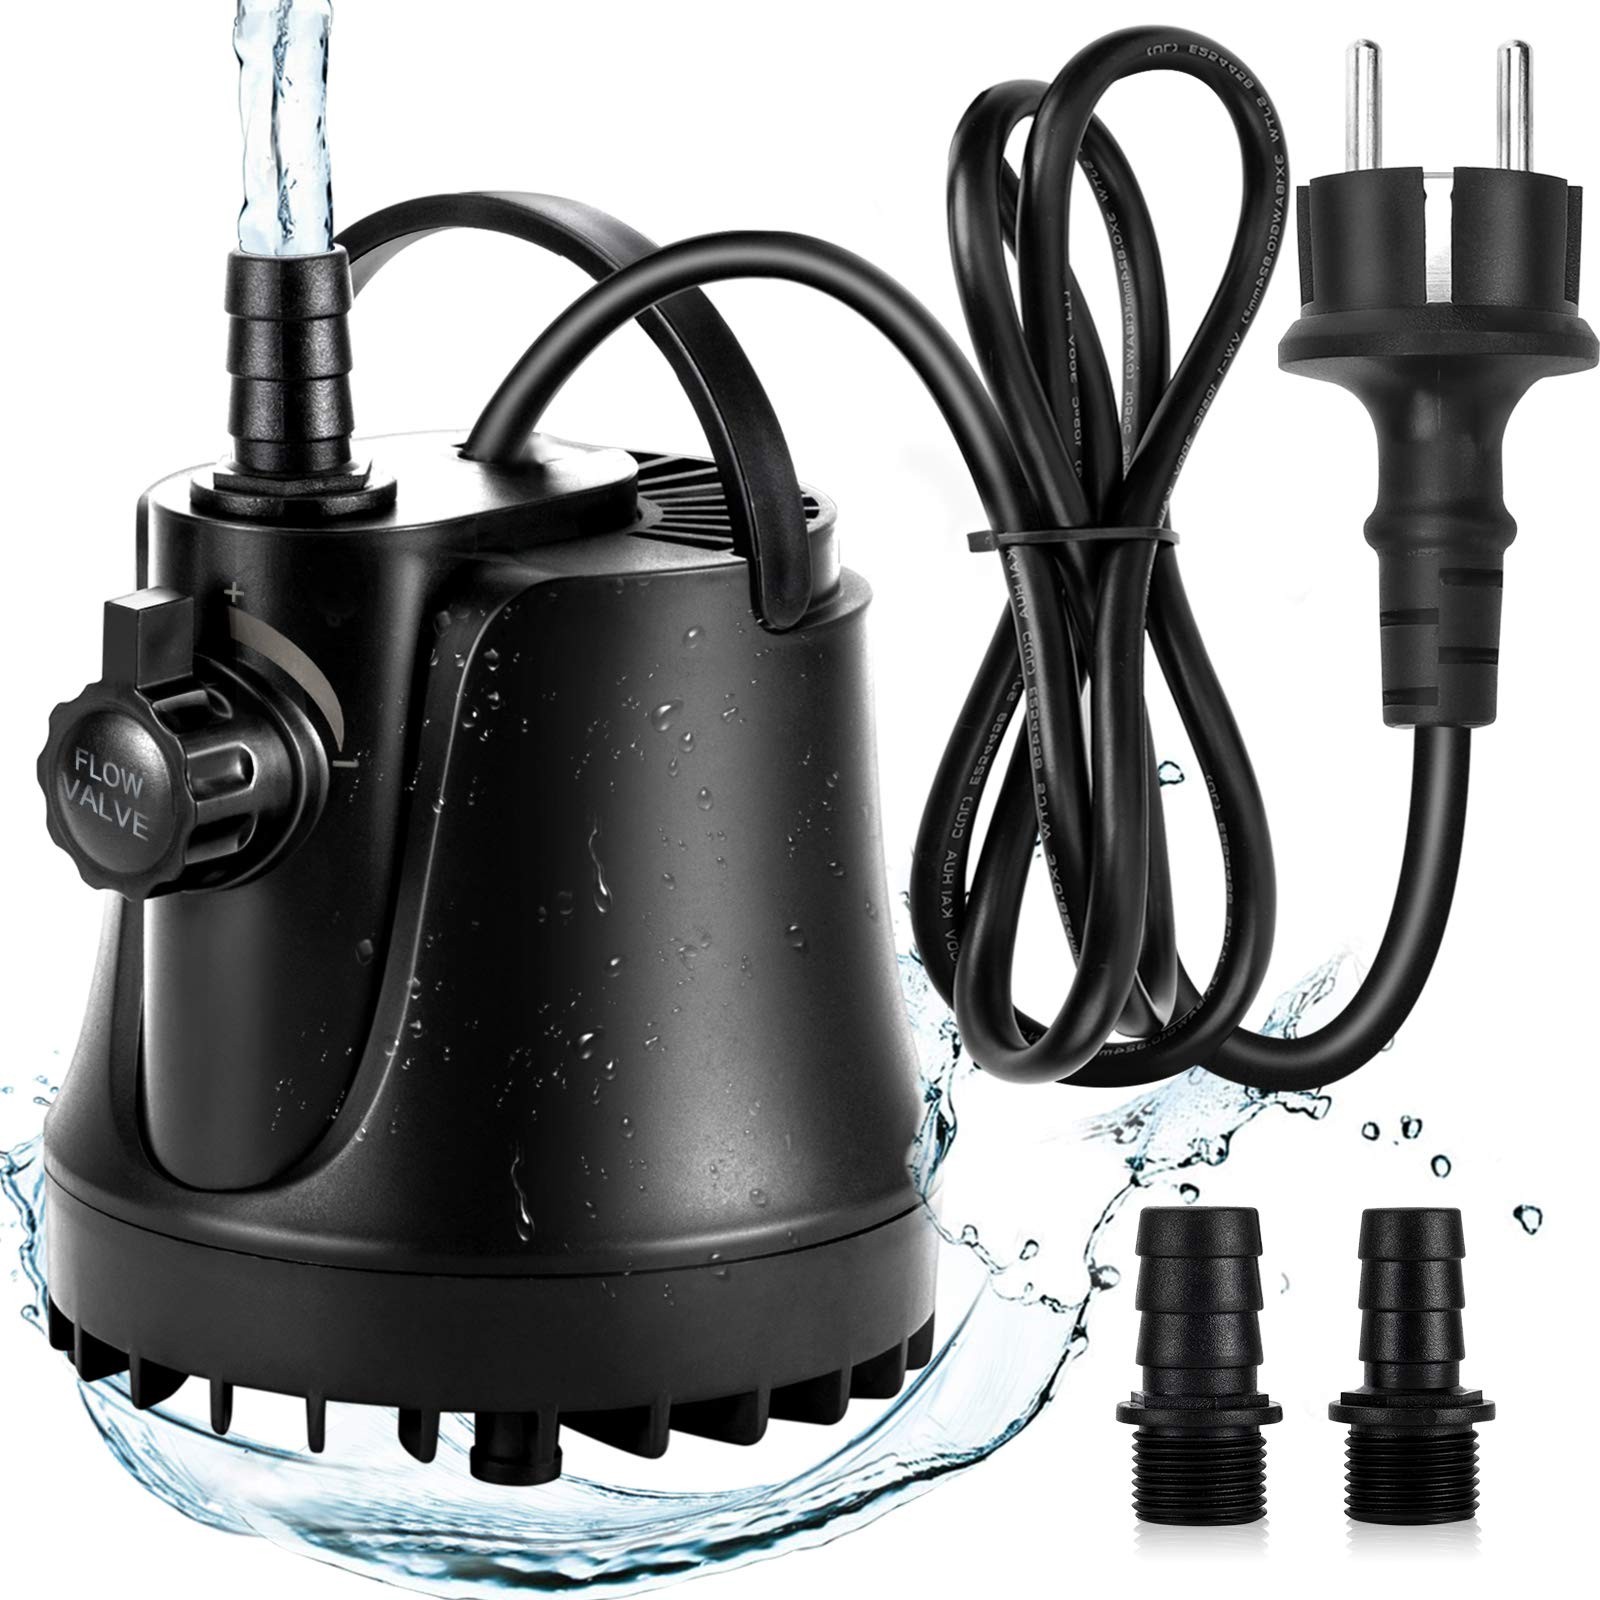 X2S Wasserwechsel Pumpe - kaufen im Aqua Planet Online Shop